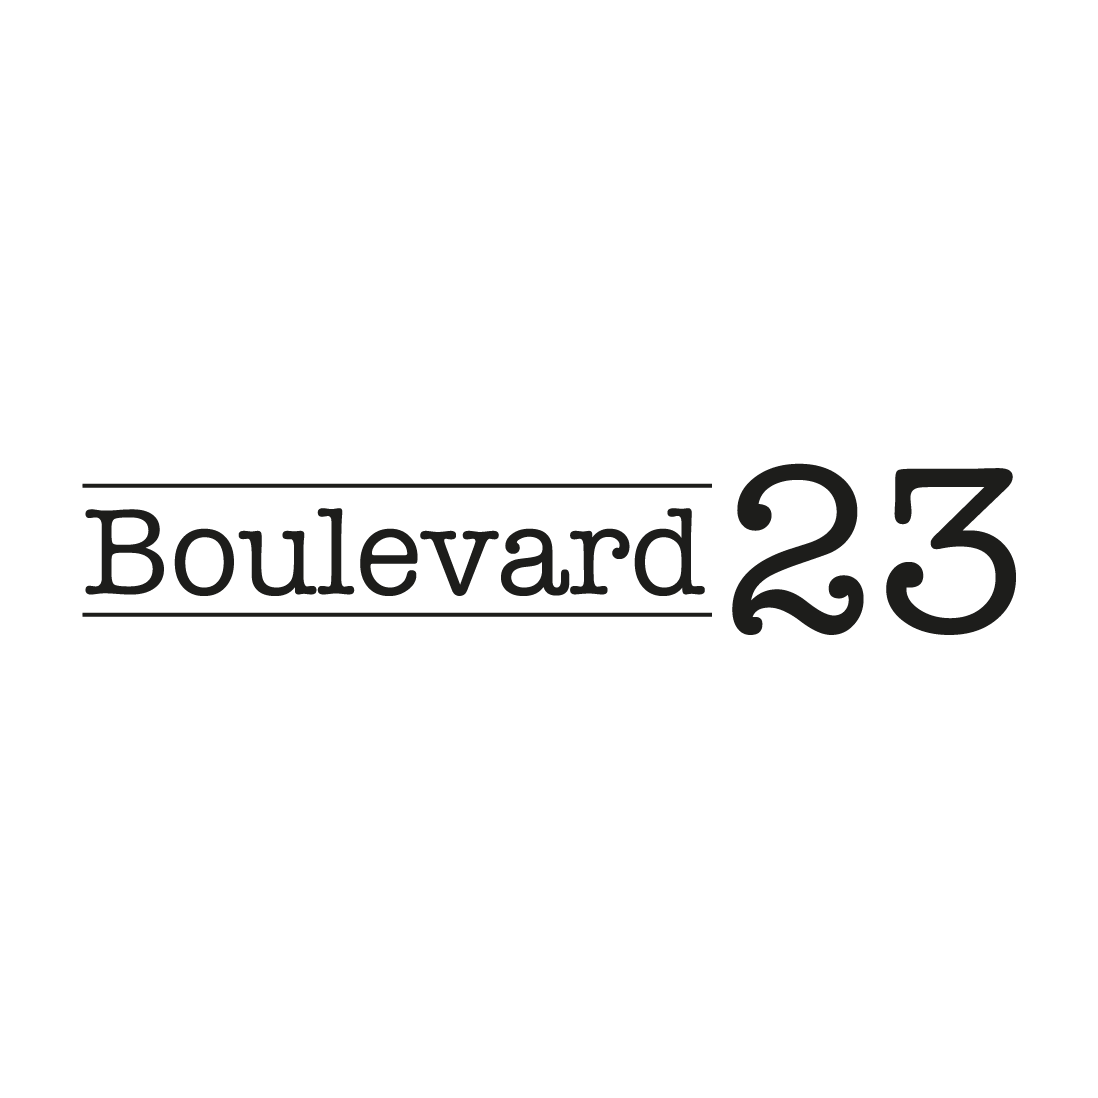 Boulevard 23